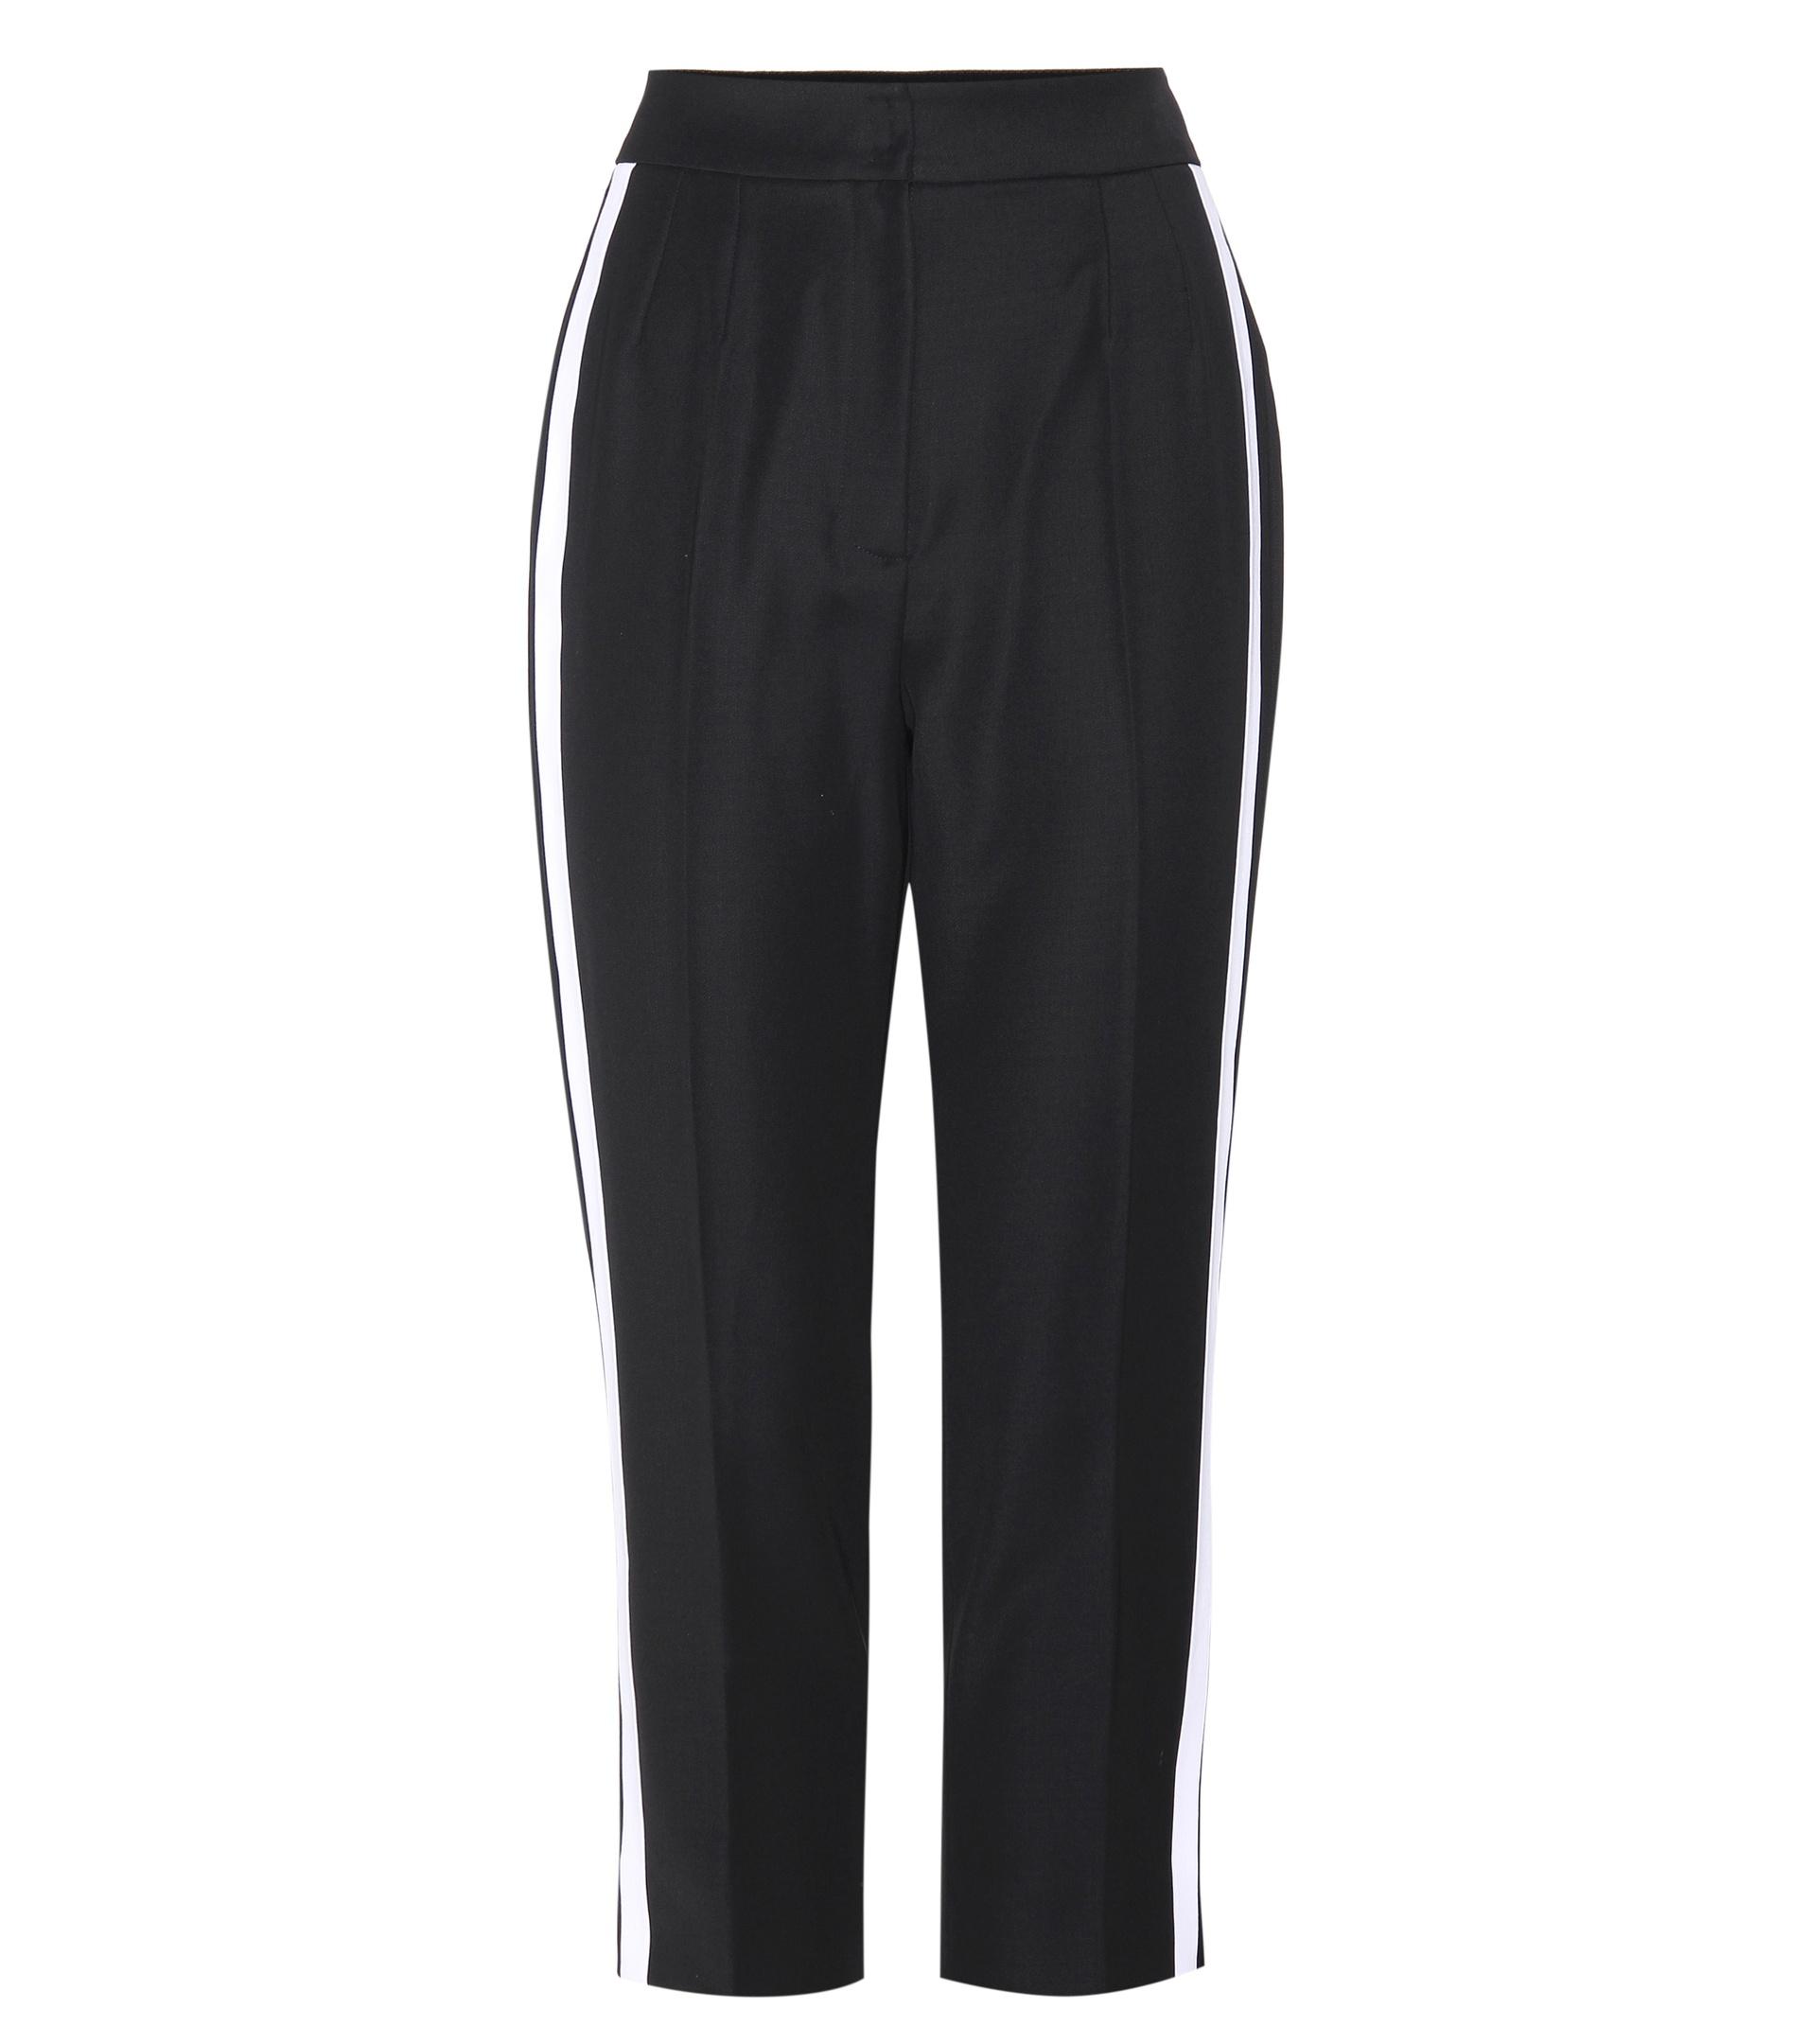 Lyst - Dolce & gabbana Virgin Wool Trousers in Black